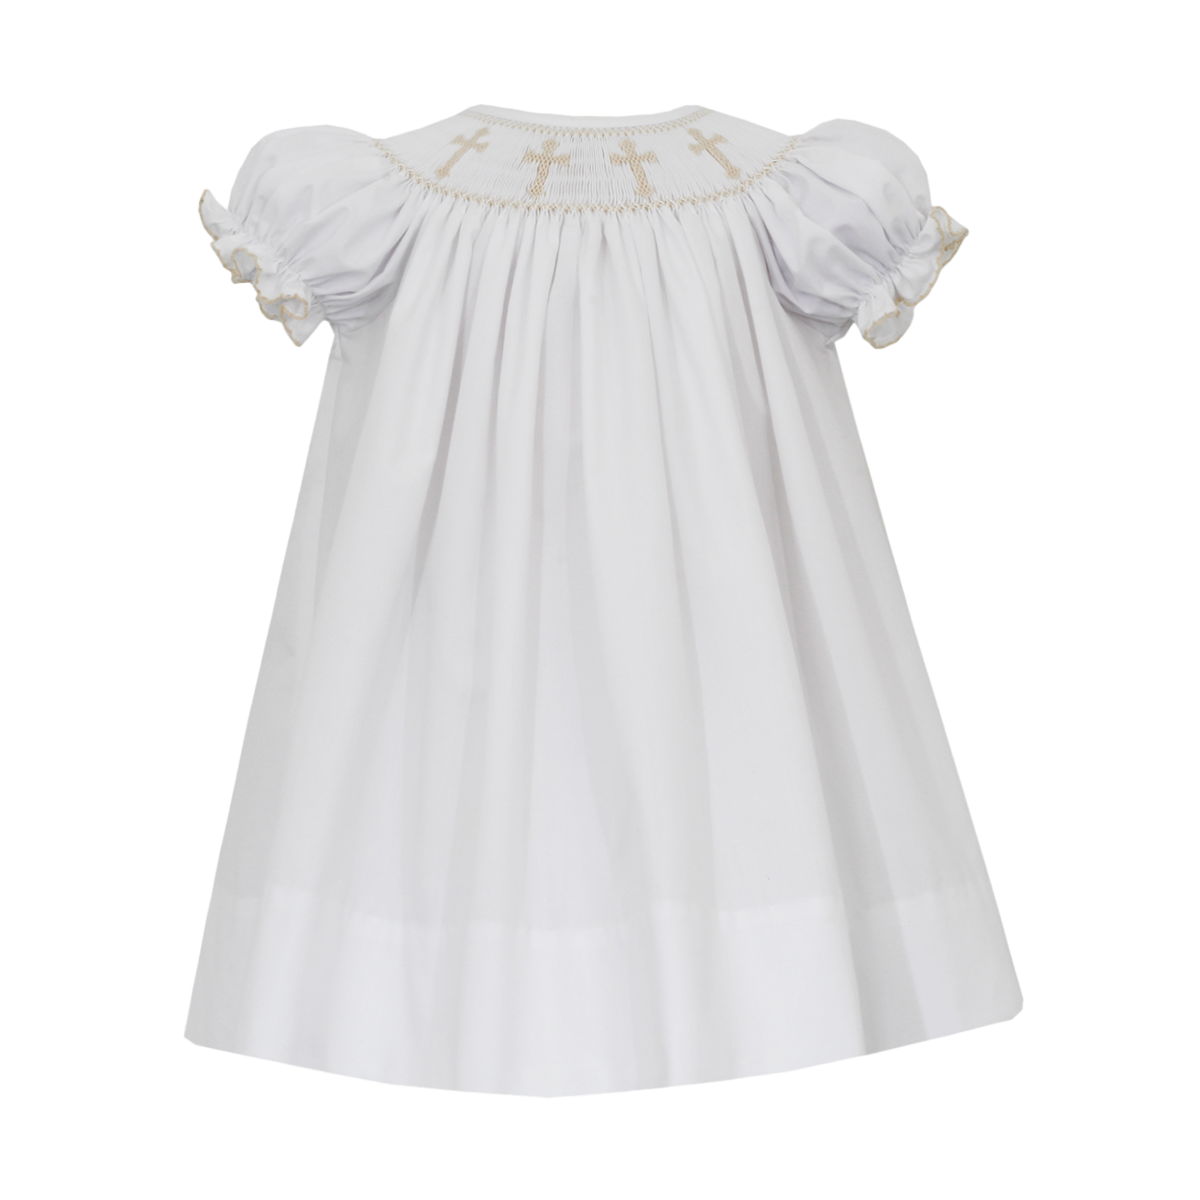 Petit Bebe Crosses Little Girl's Smocked Easter Baby Dedication Dress